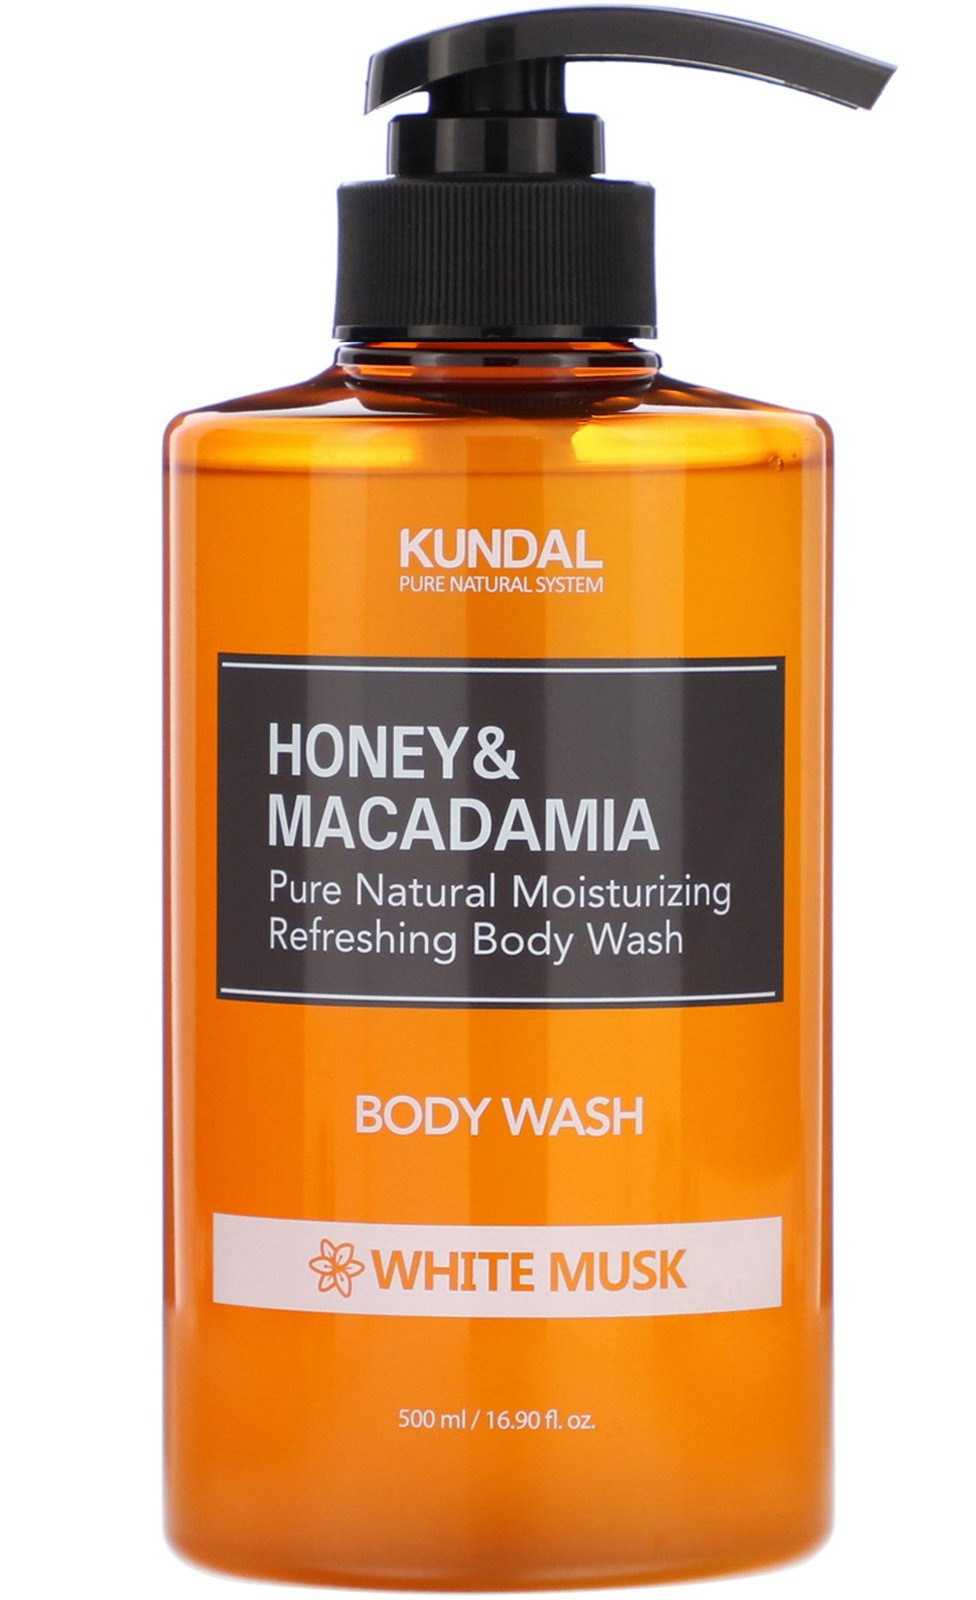 Kundal Honey & Macademia Body Wash White Musk